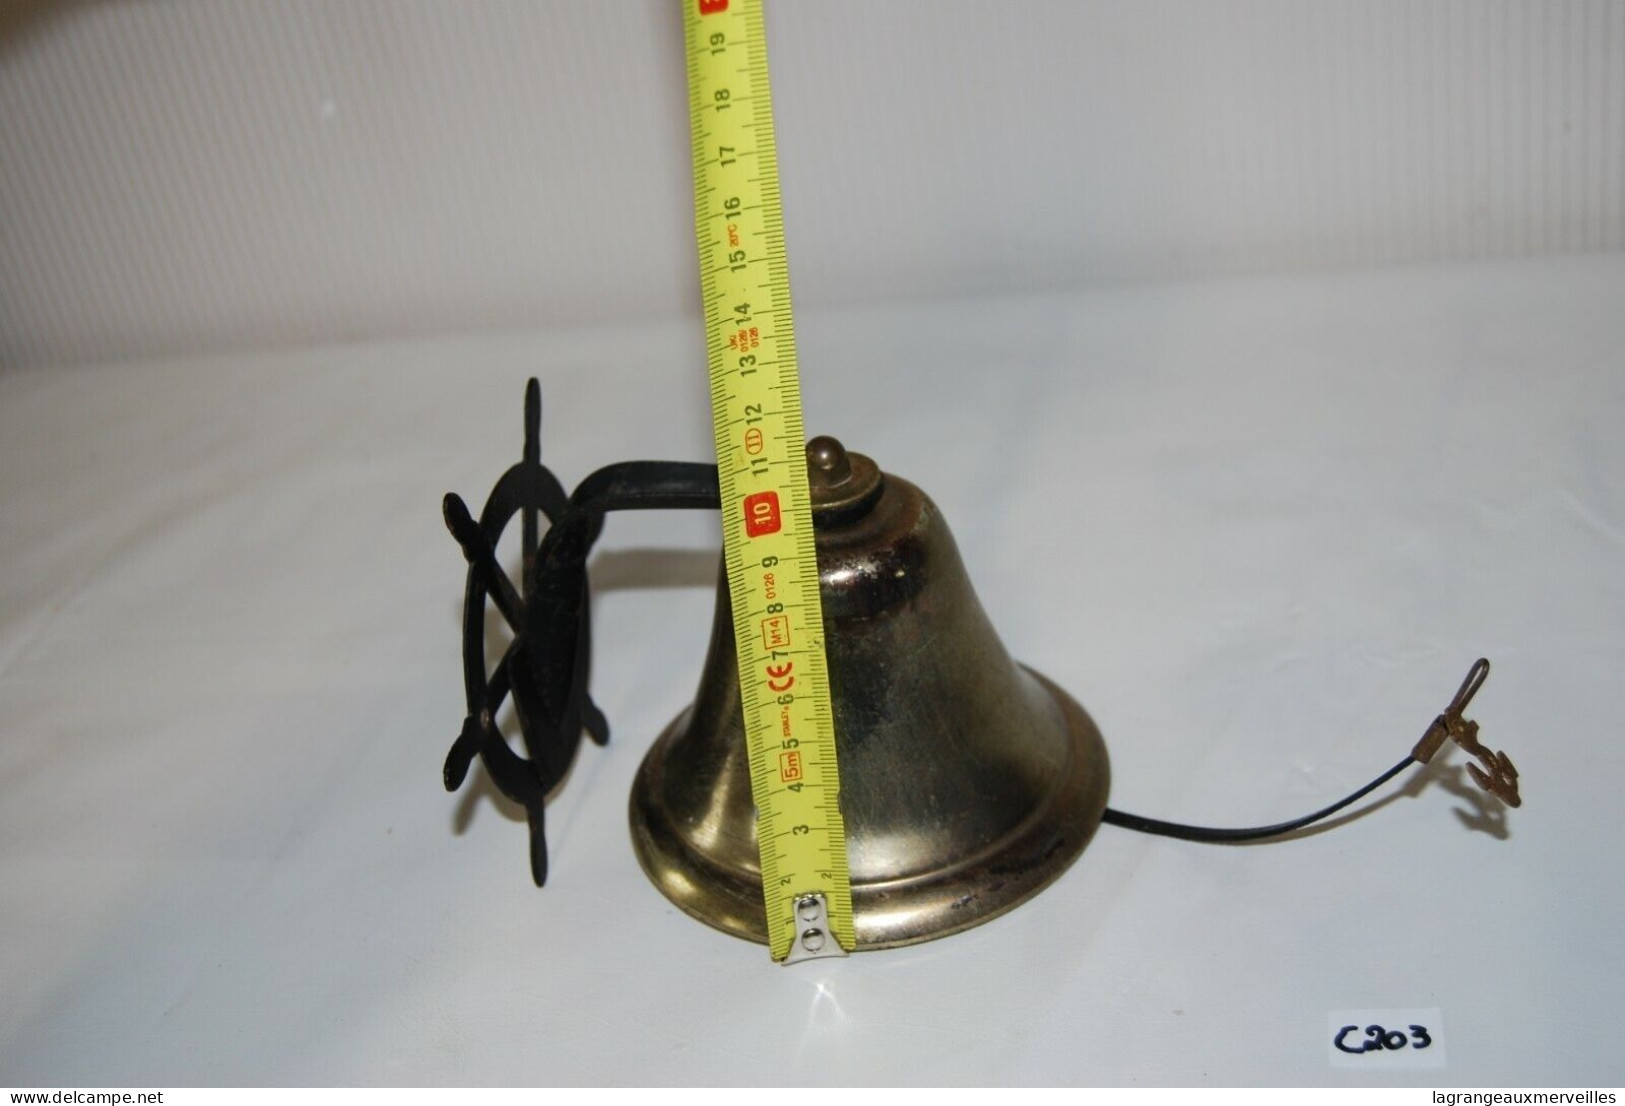 C203 Ancienne Cloche A Suspendre - Bateau - Glocken